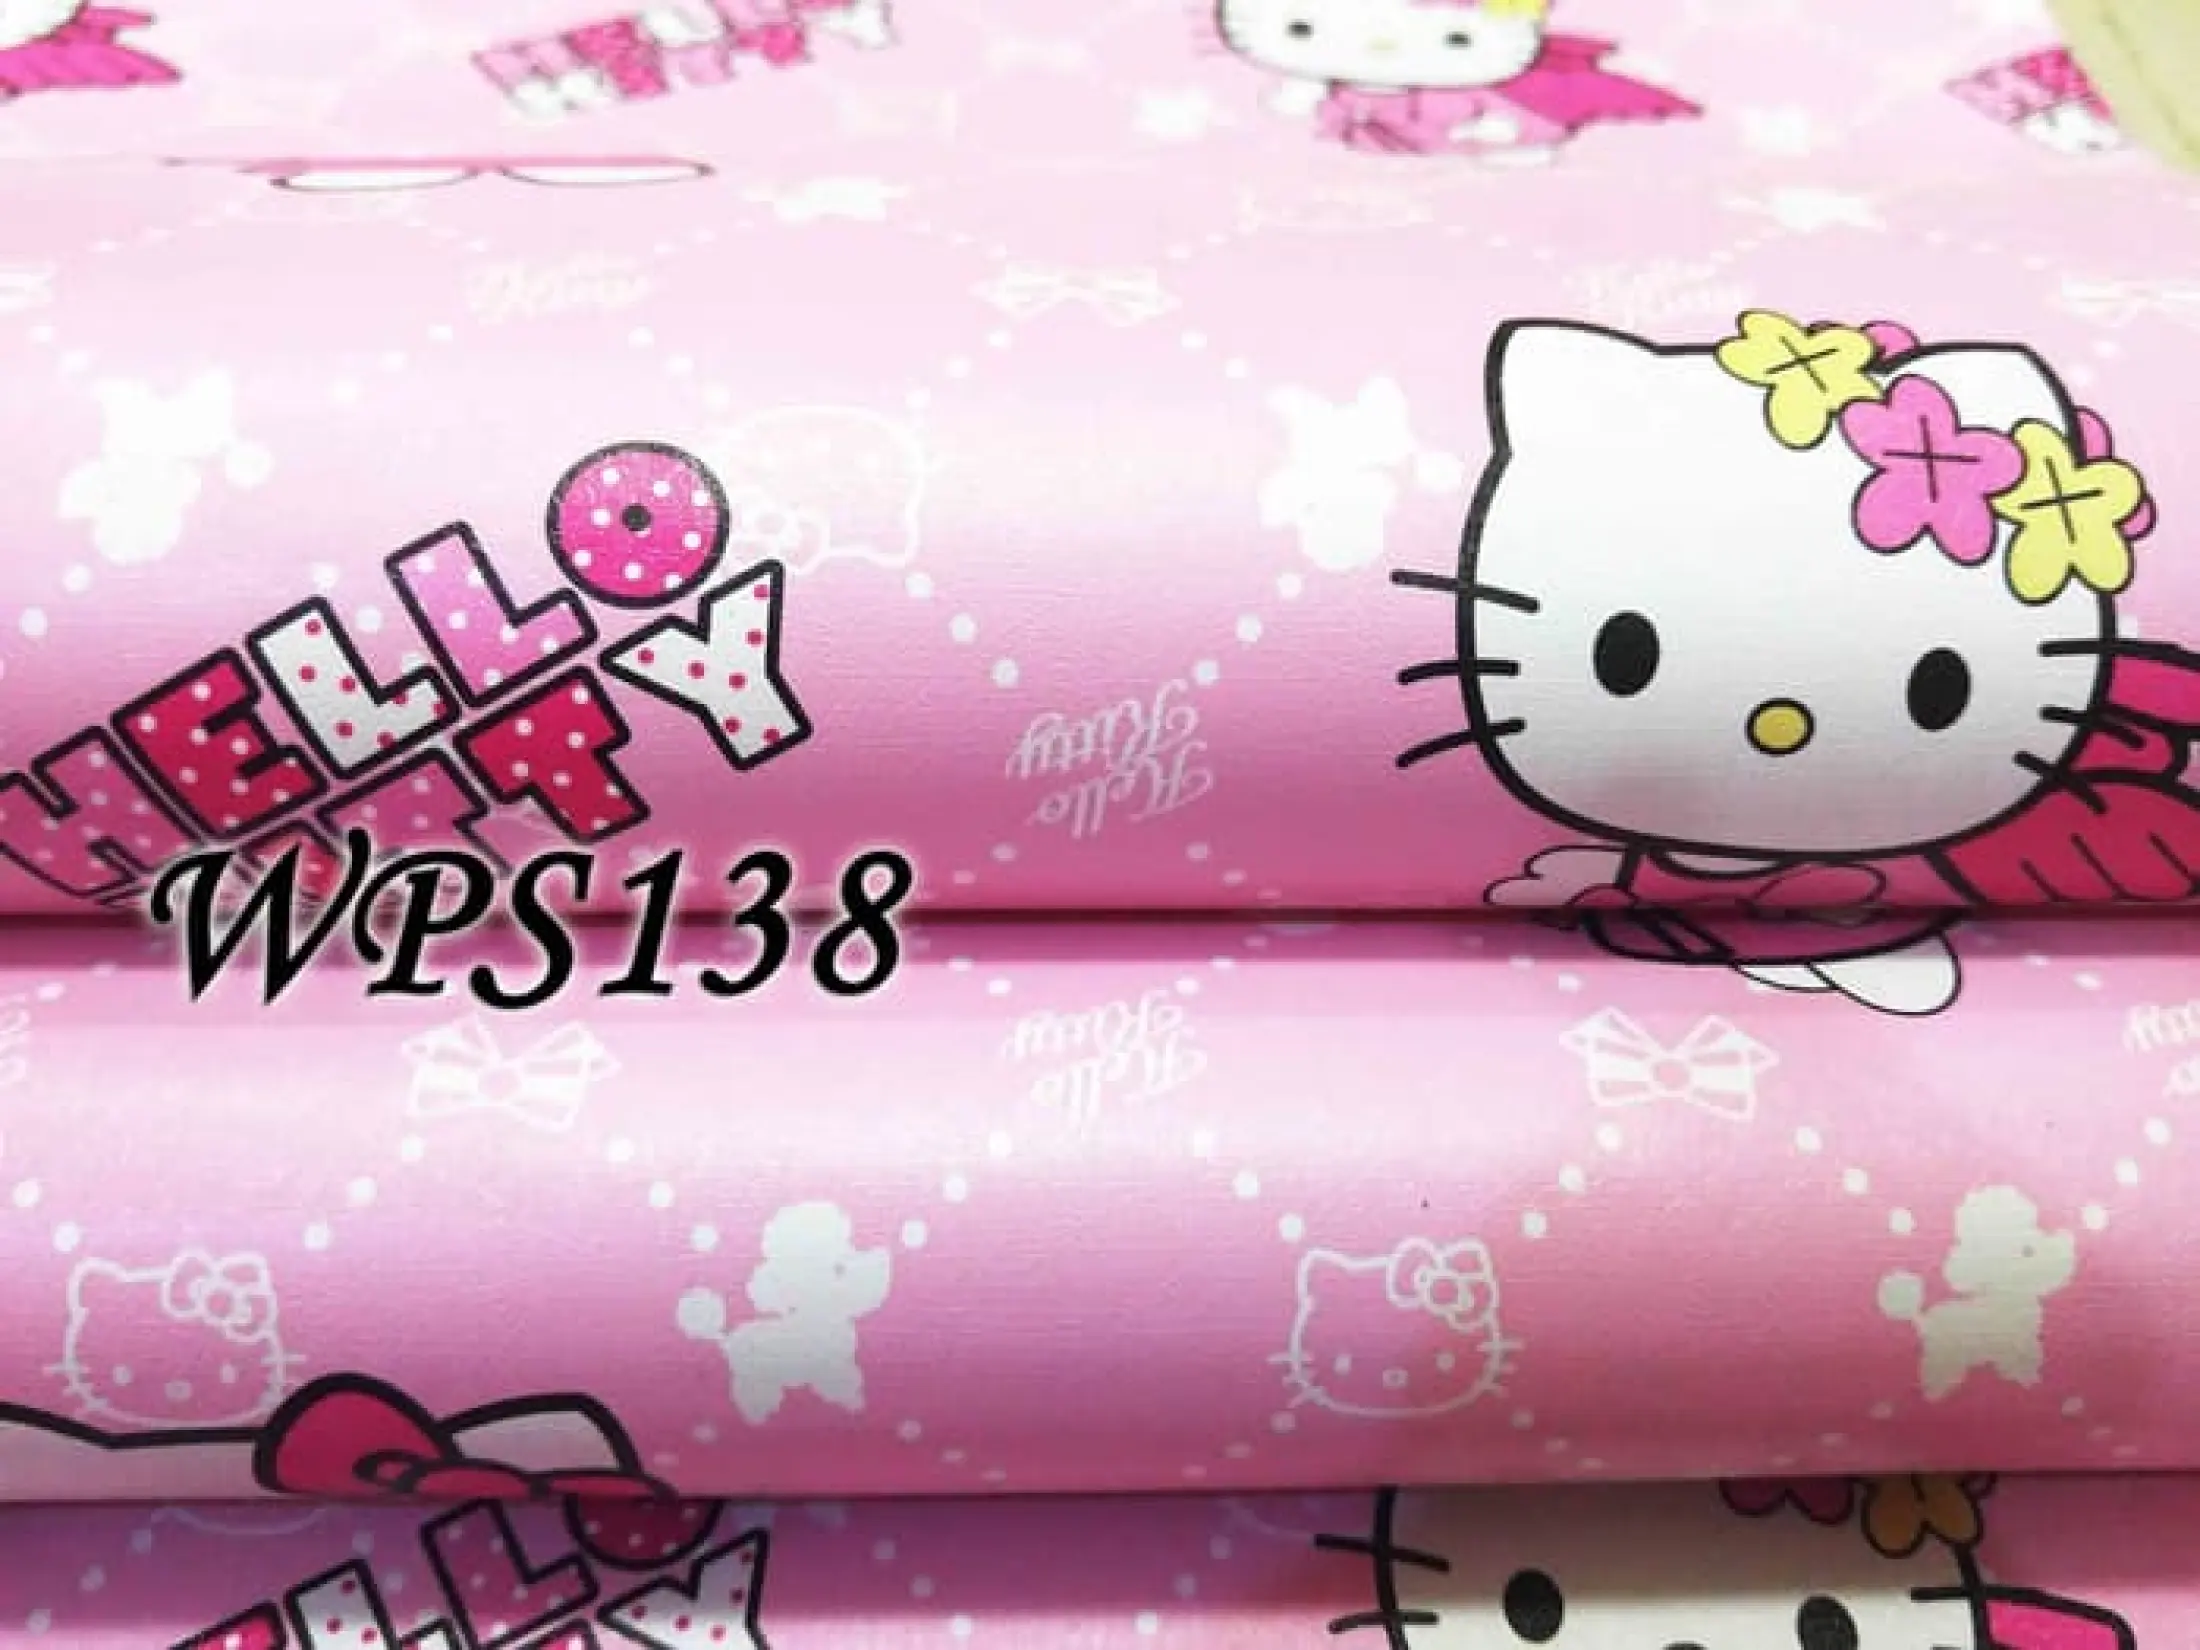 Magic Cod Wallpaper Hello Kitty Peri Dan Salur Bintang Pink Biru Best Seller Sticker Dinding Murah Promo Meter Stiker Timbul Mewah Dekorasi Rumah Kamar Tidur Anak Dewasa Minimalis Klasik Laki Perempuan Cowok